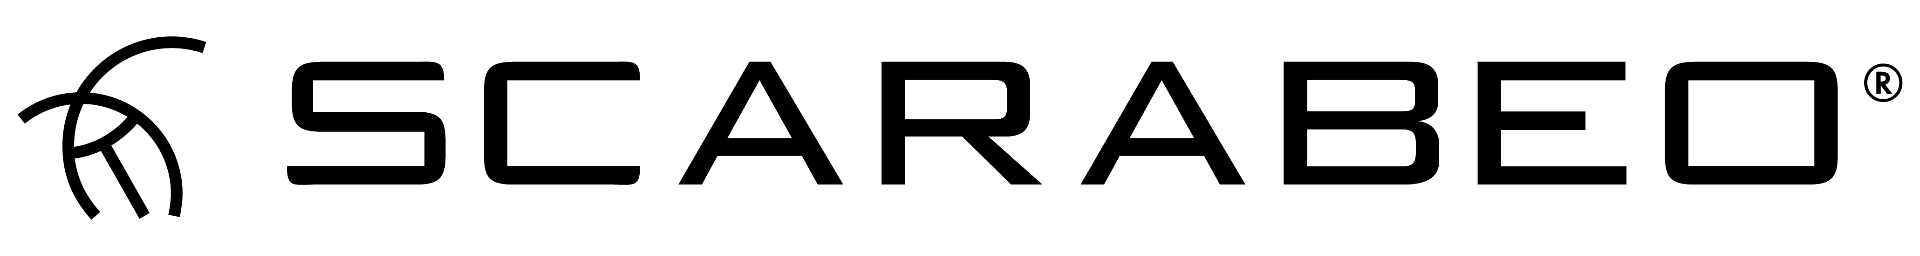 logo_scarabeo_2018-01.png